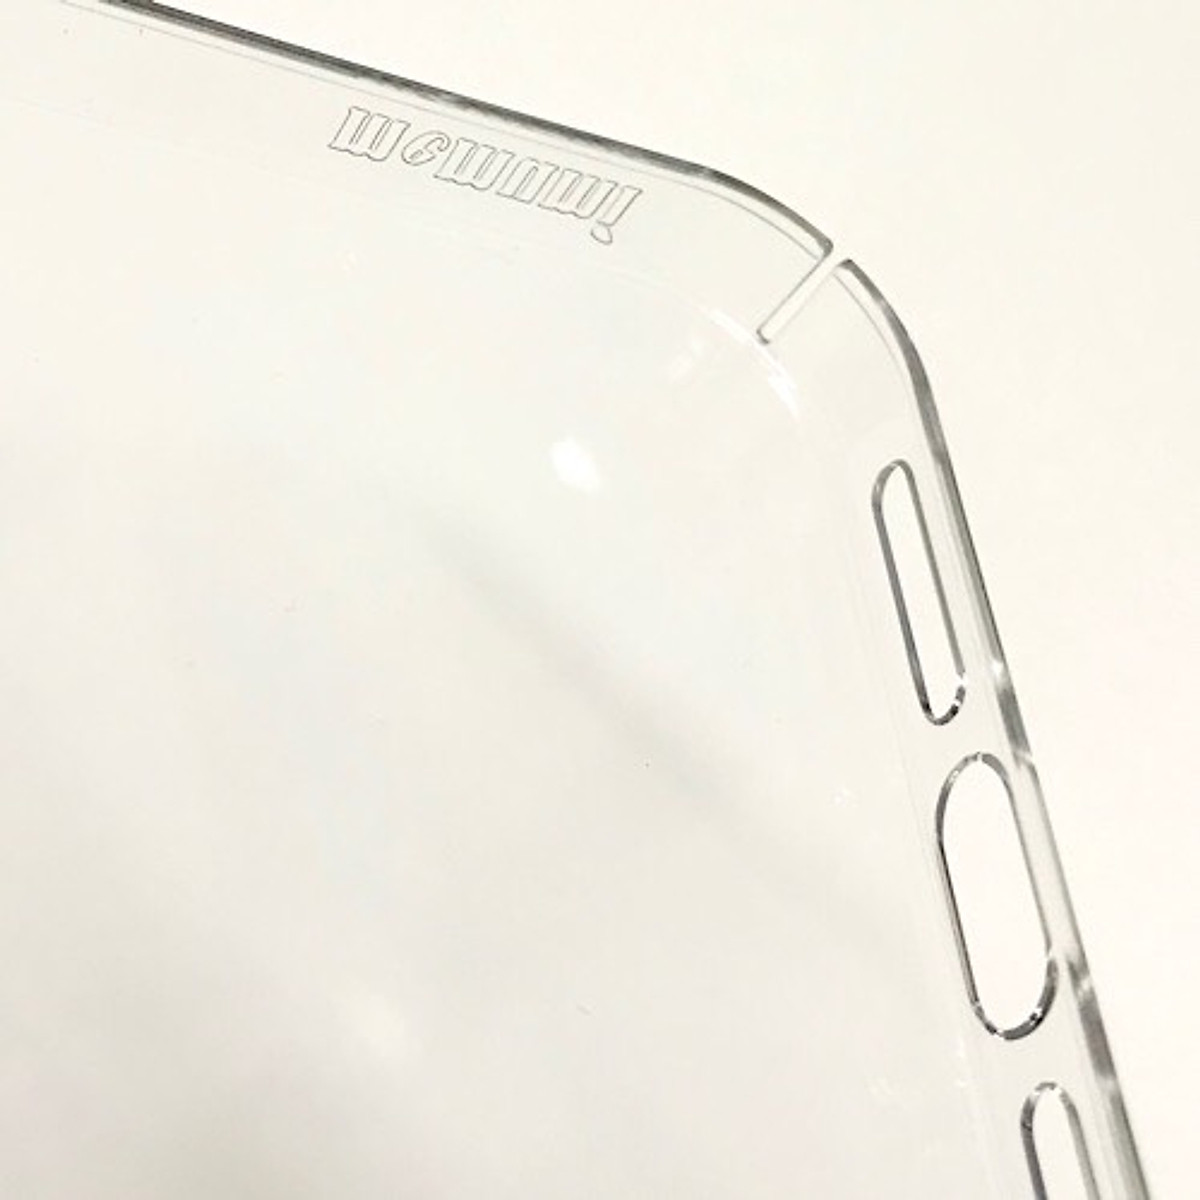 Ốp lưng chống sốc trong suốt siêu mỏng 1mm cho iPhone 14/ 14 Plus/ 14 Pro/ 14 Pro Max hiệu Memumi Glitter (độ trong tuyệt đối, chống trầy xước, chống ố vàng, tản nhiệt tốt) - hàng nhập khẩu